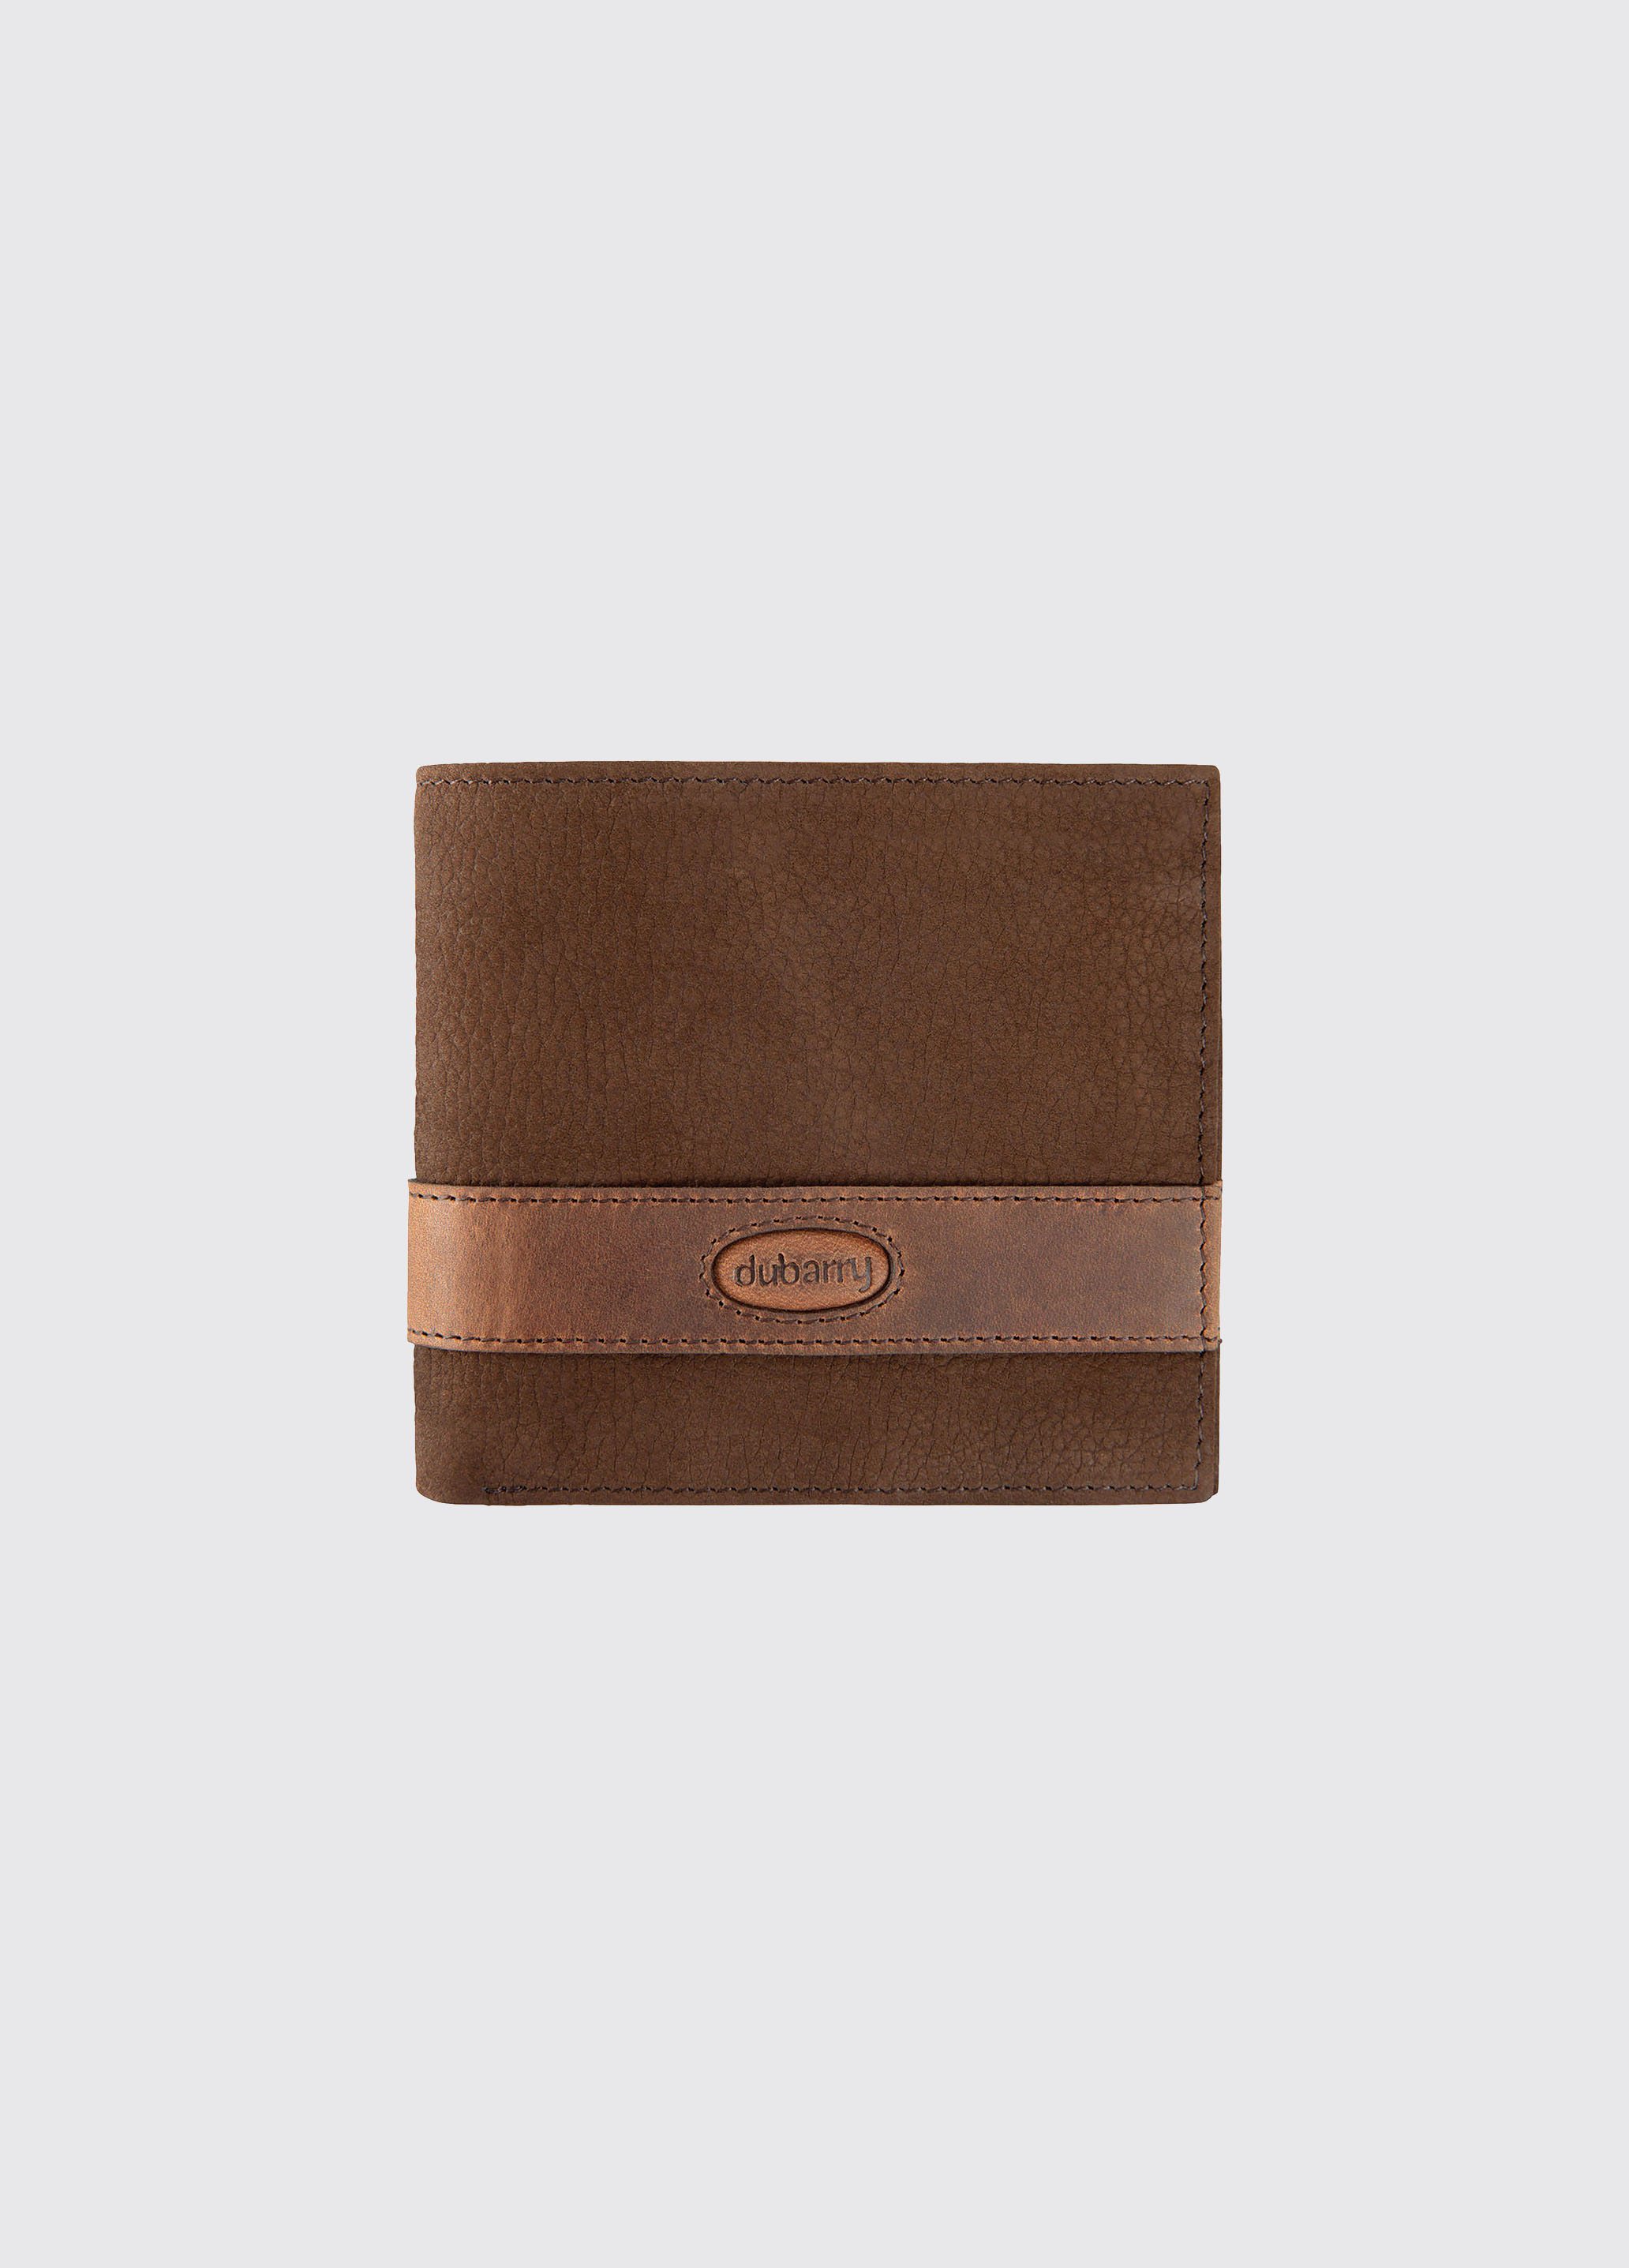 Grafton Leather Wallet - Walnut